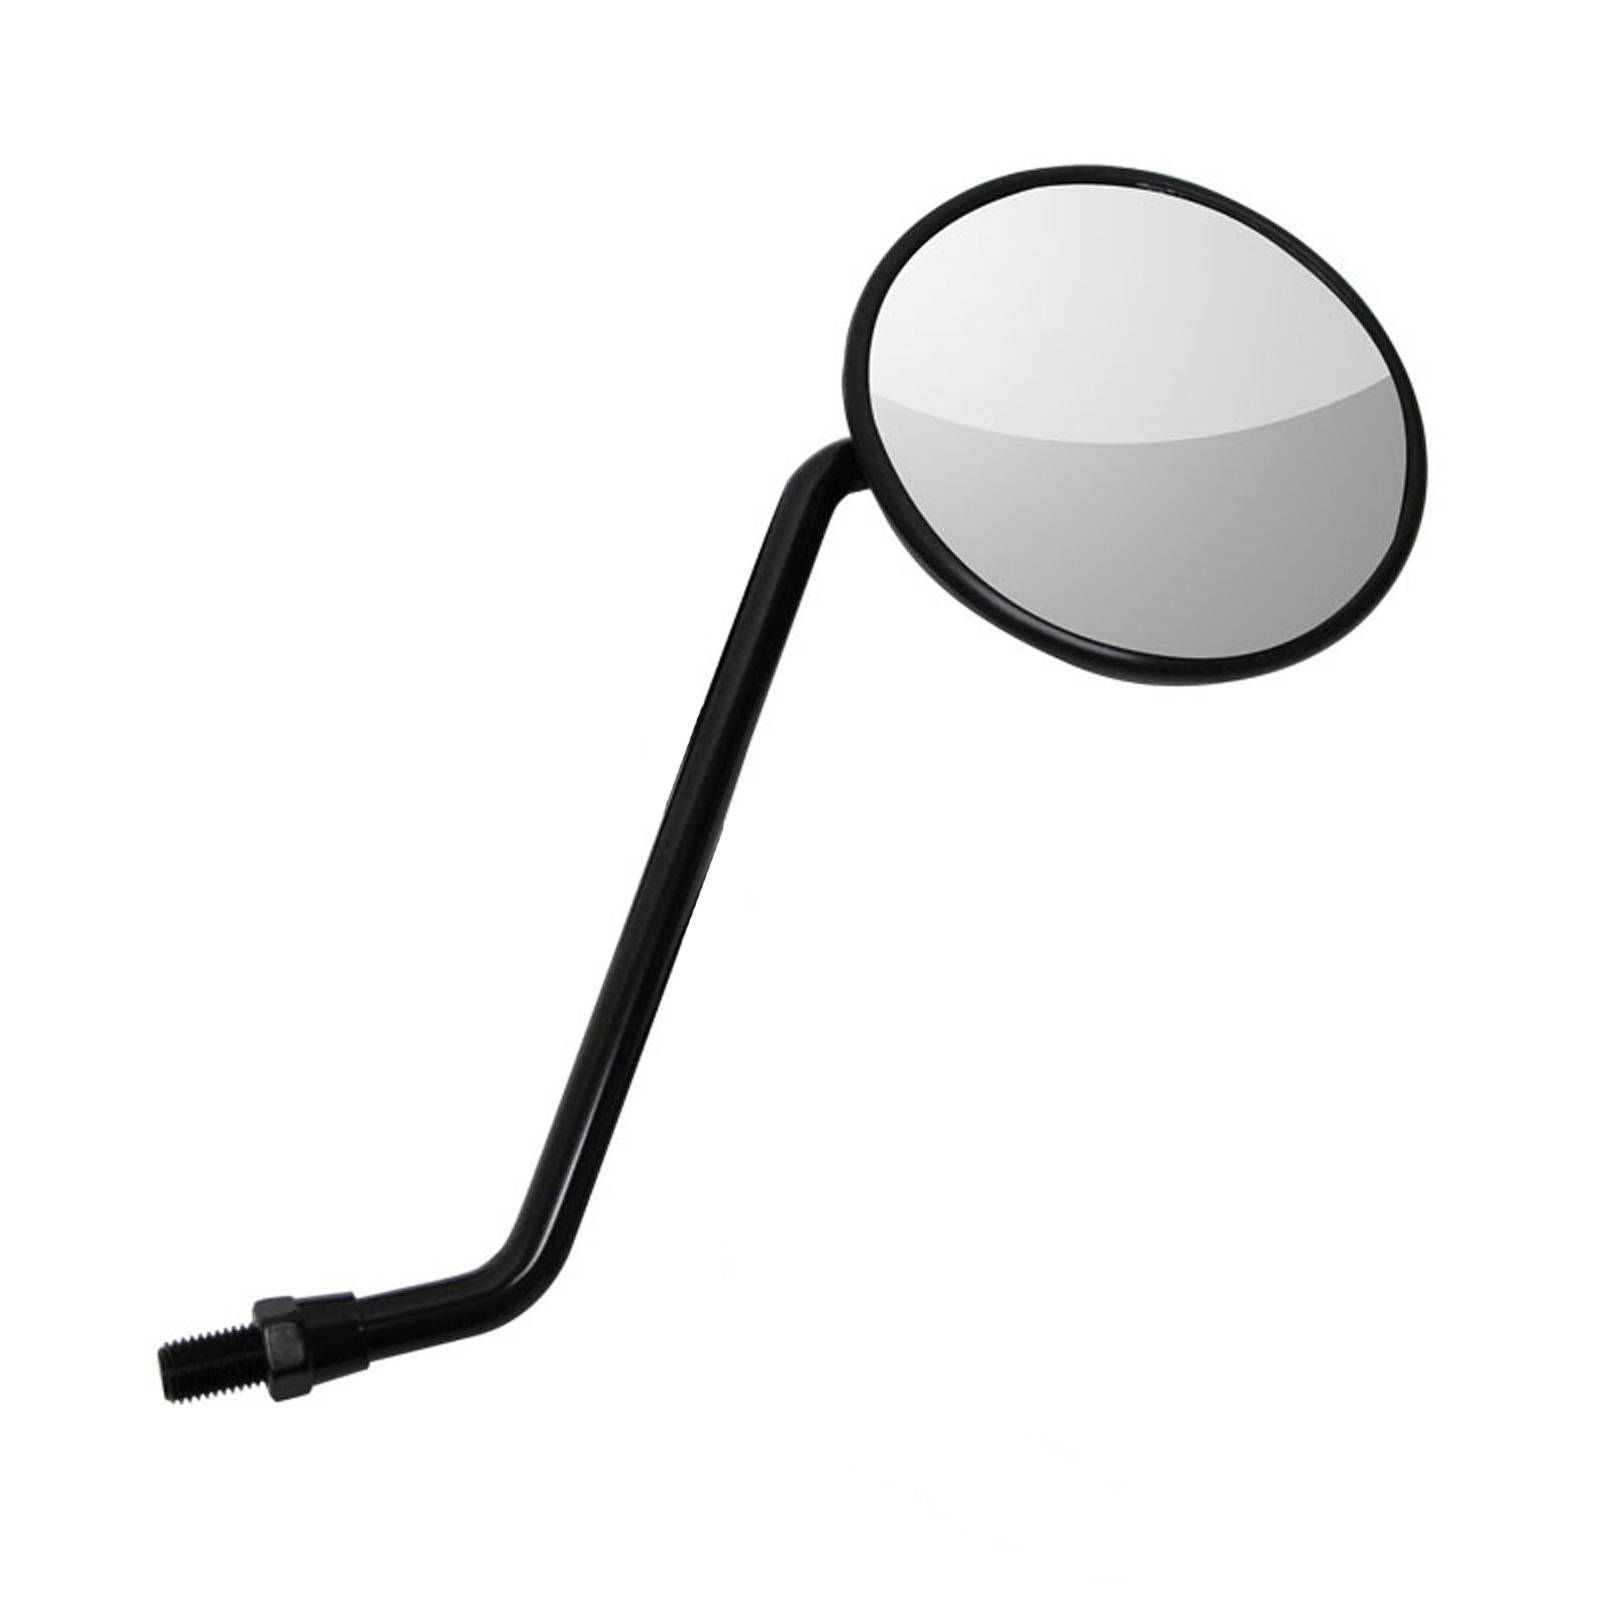 New WHITES Mirror - Black Round CT110 Style 10mm (EA) #MIR201195